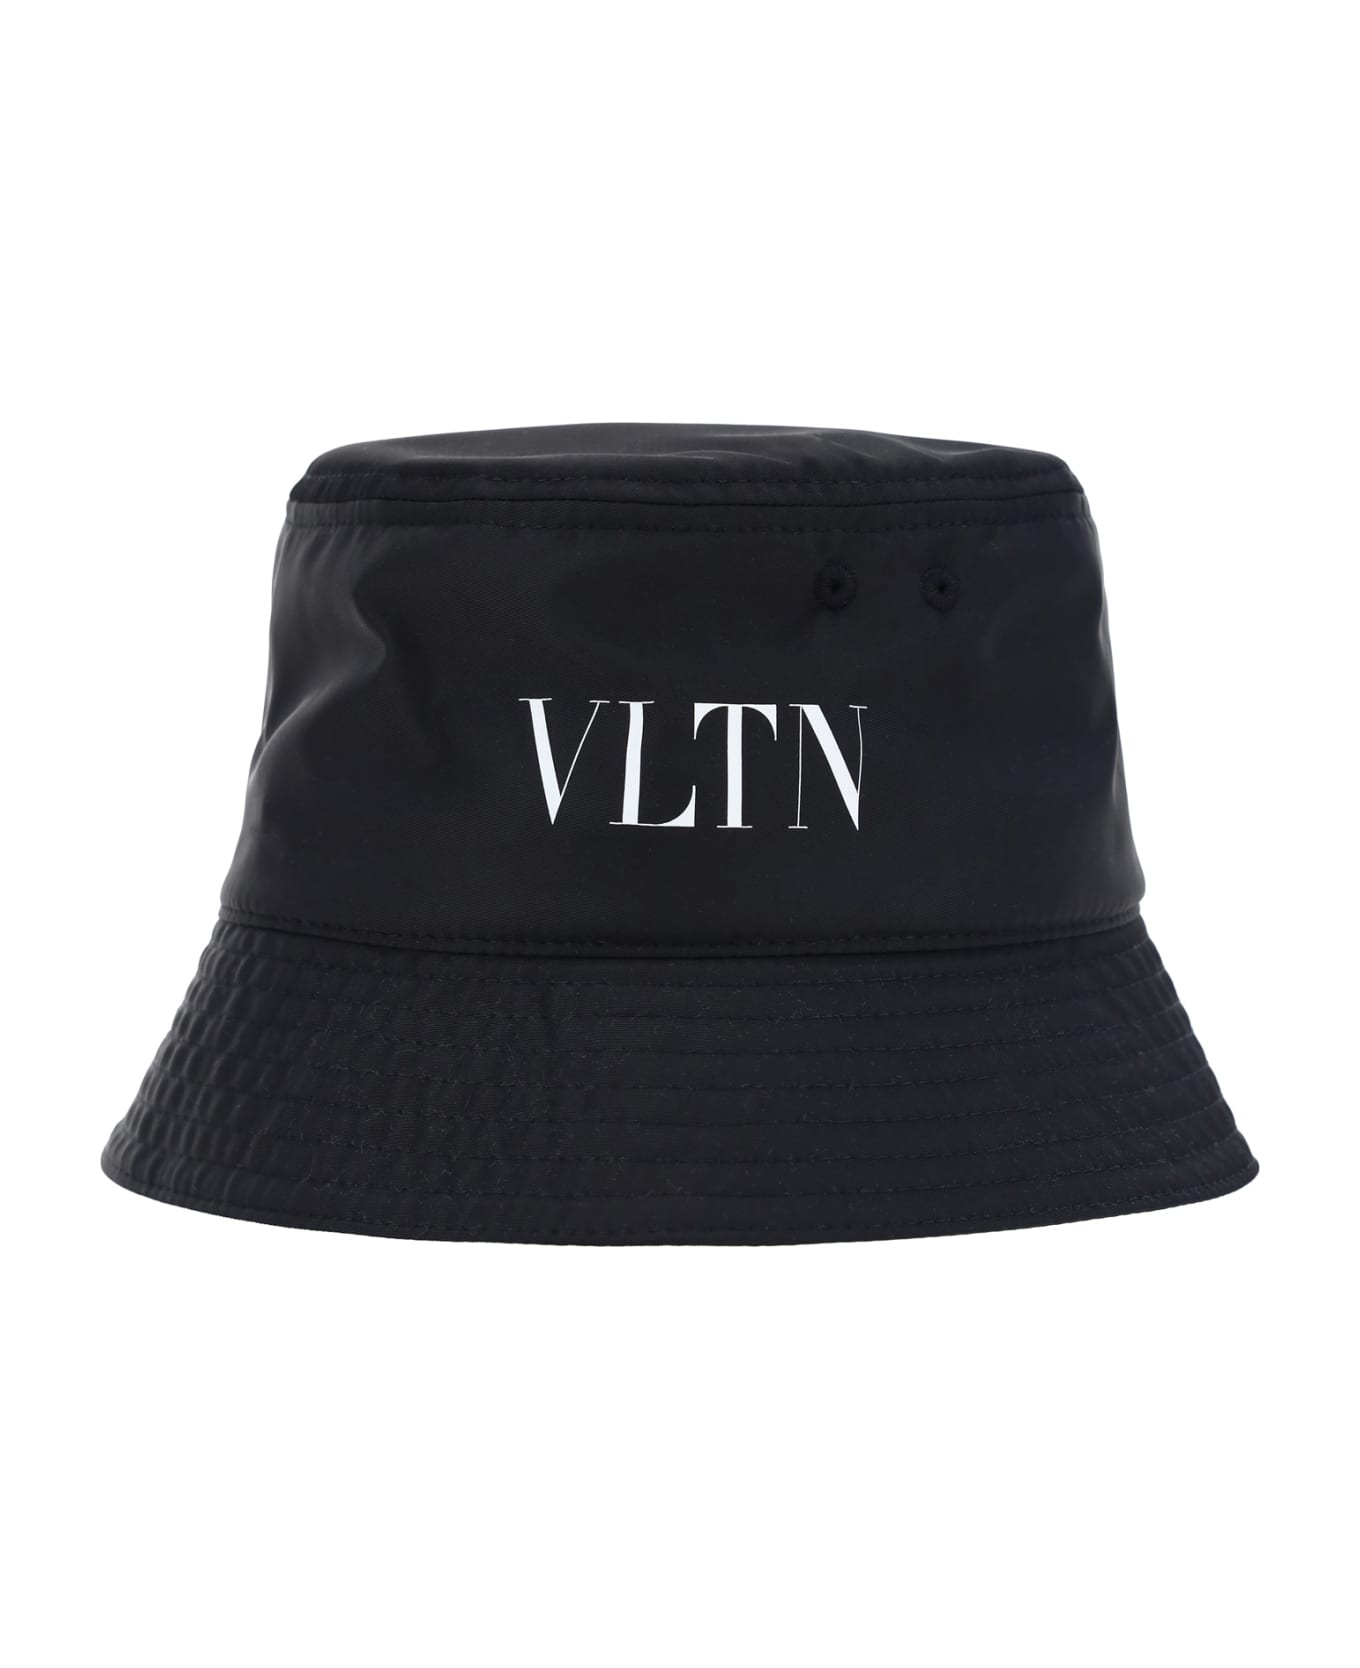 Valentino Garavani Vlnt Hat - Nero/bianco 帽子